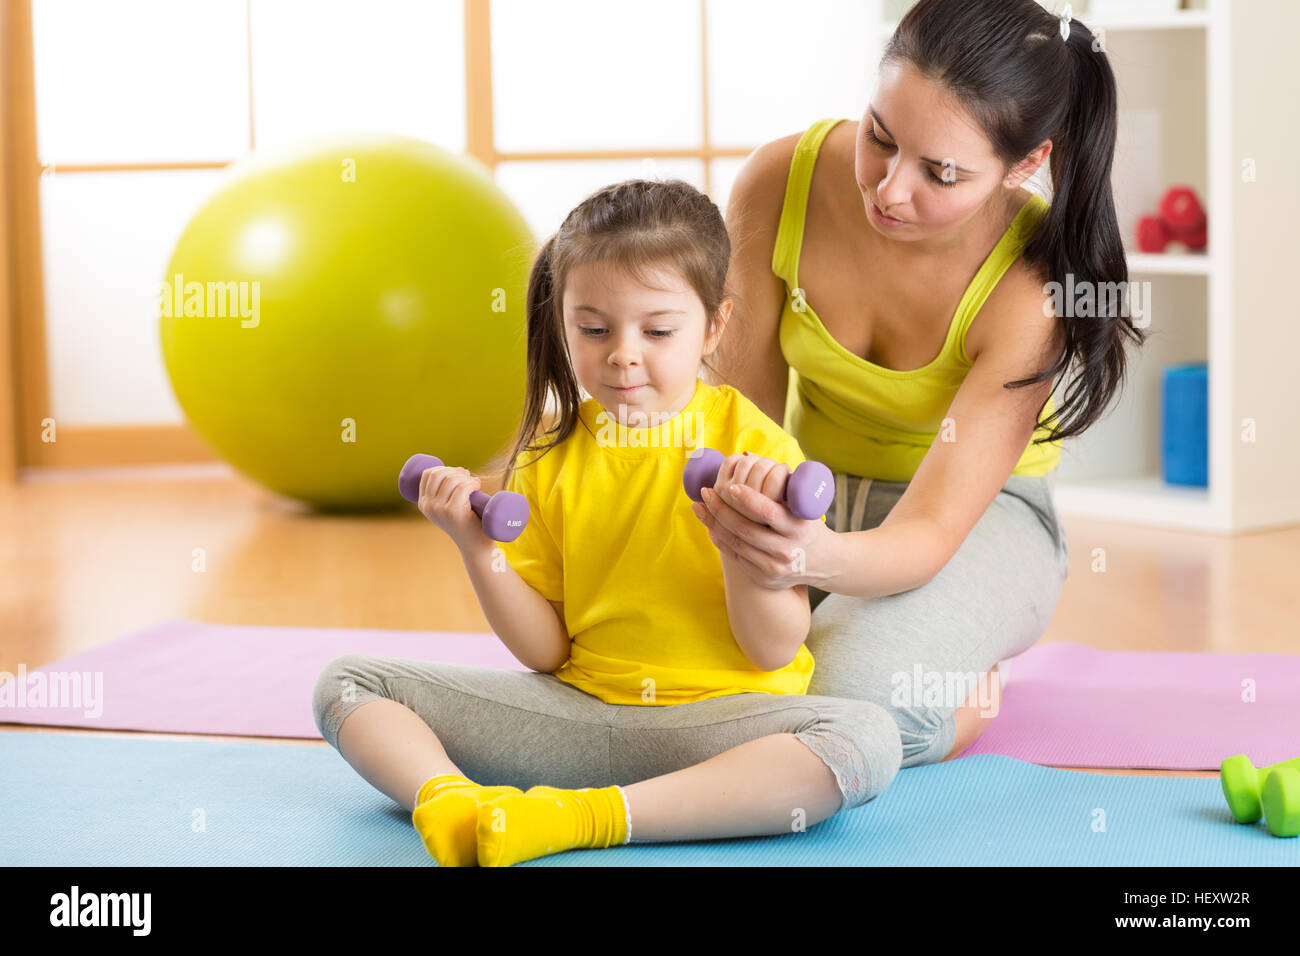 La famille de la mère et enfant fille sont engagés dans fitness, yoga, l'exercice à la maison ou salle de sport Banque D'Images